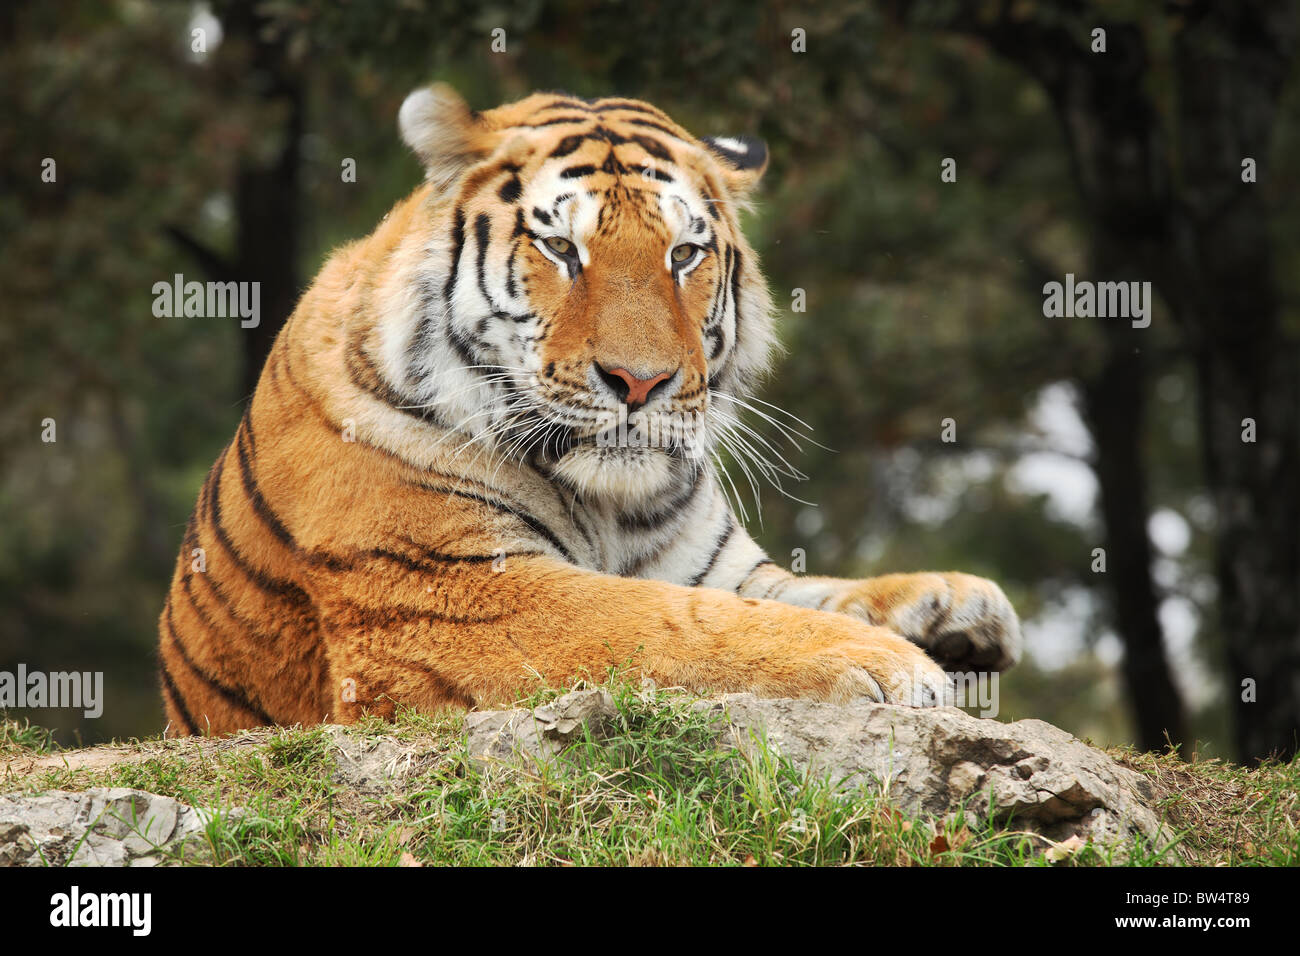 Portrait of resting tiger from Safari Park in Novara, Italy. Stock Photo